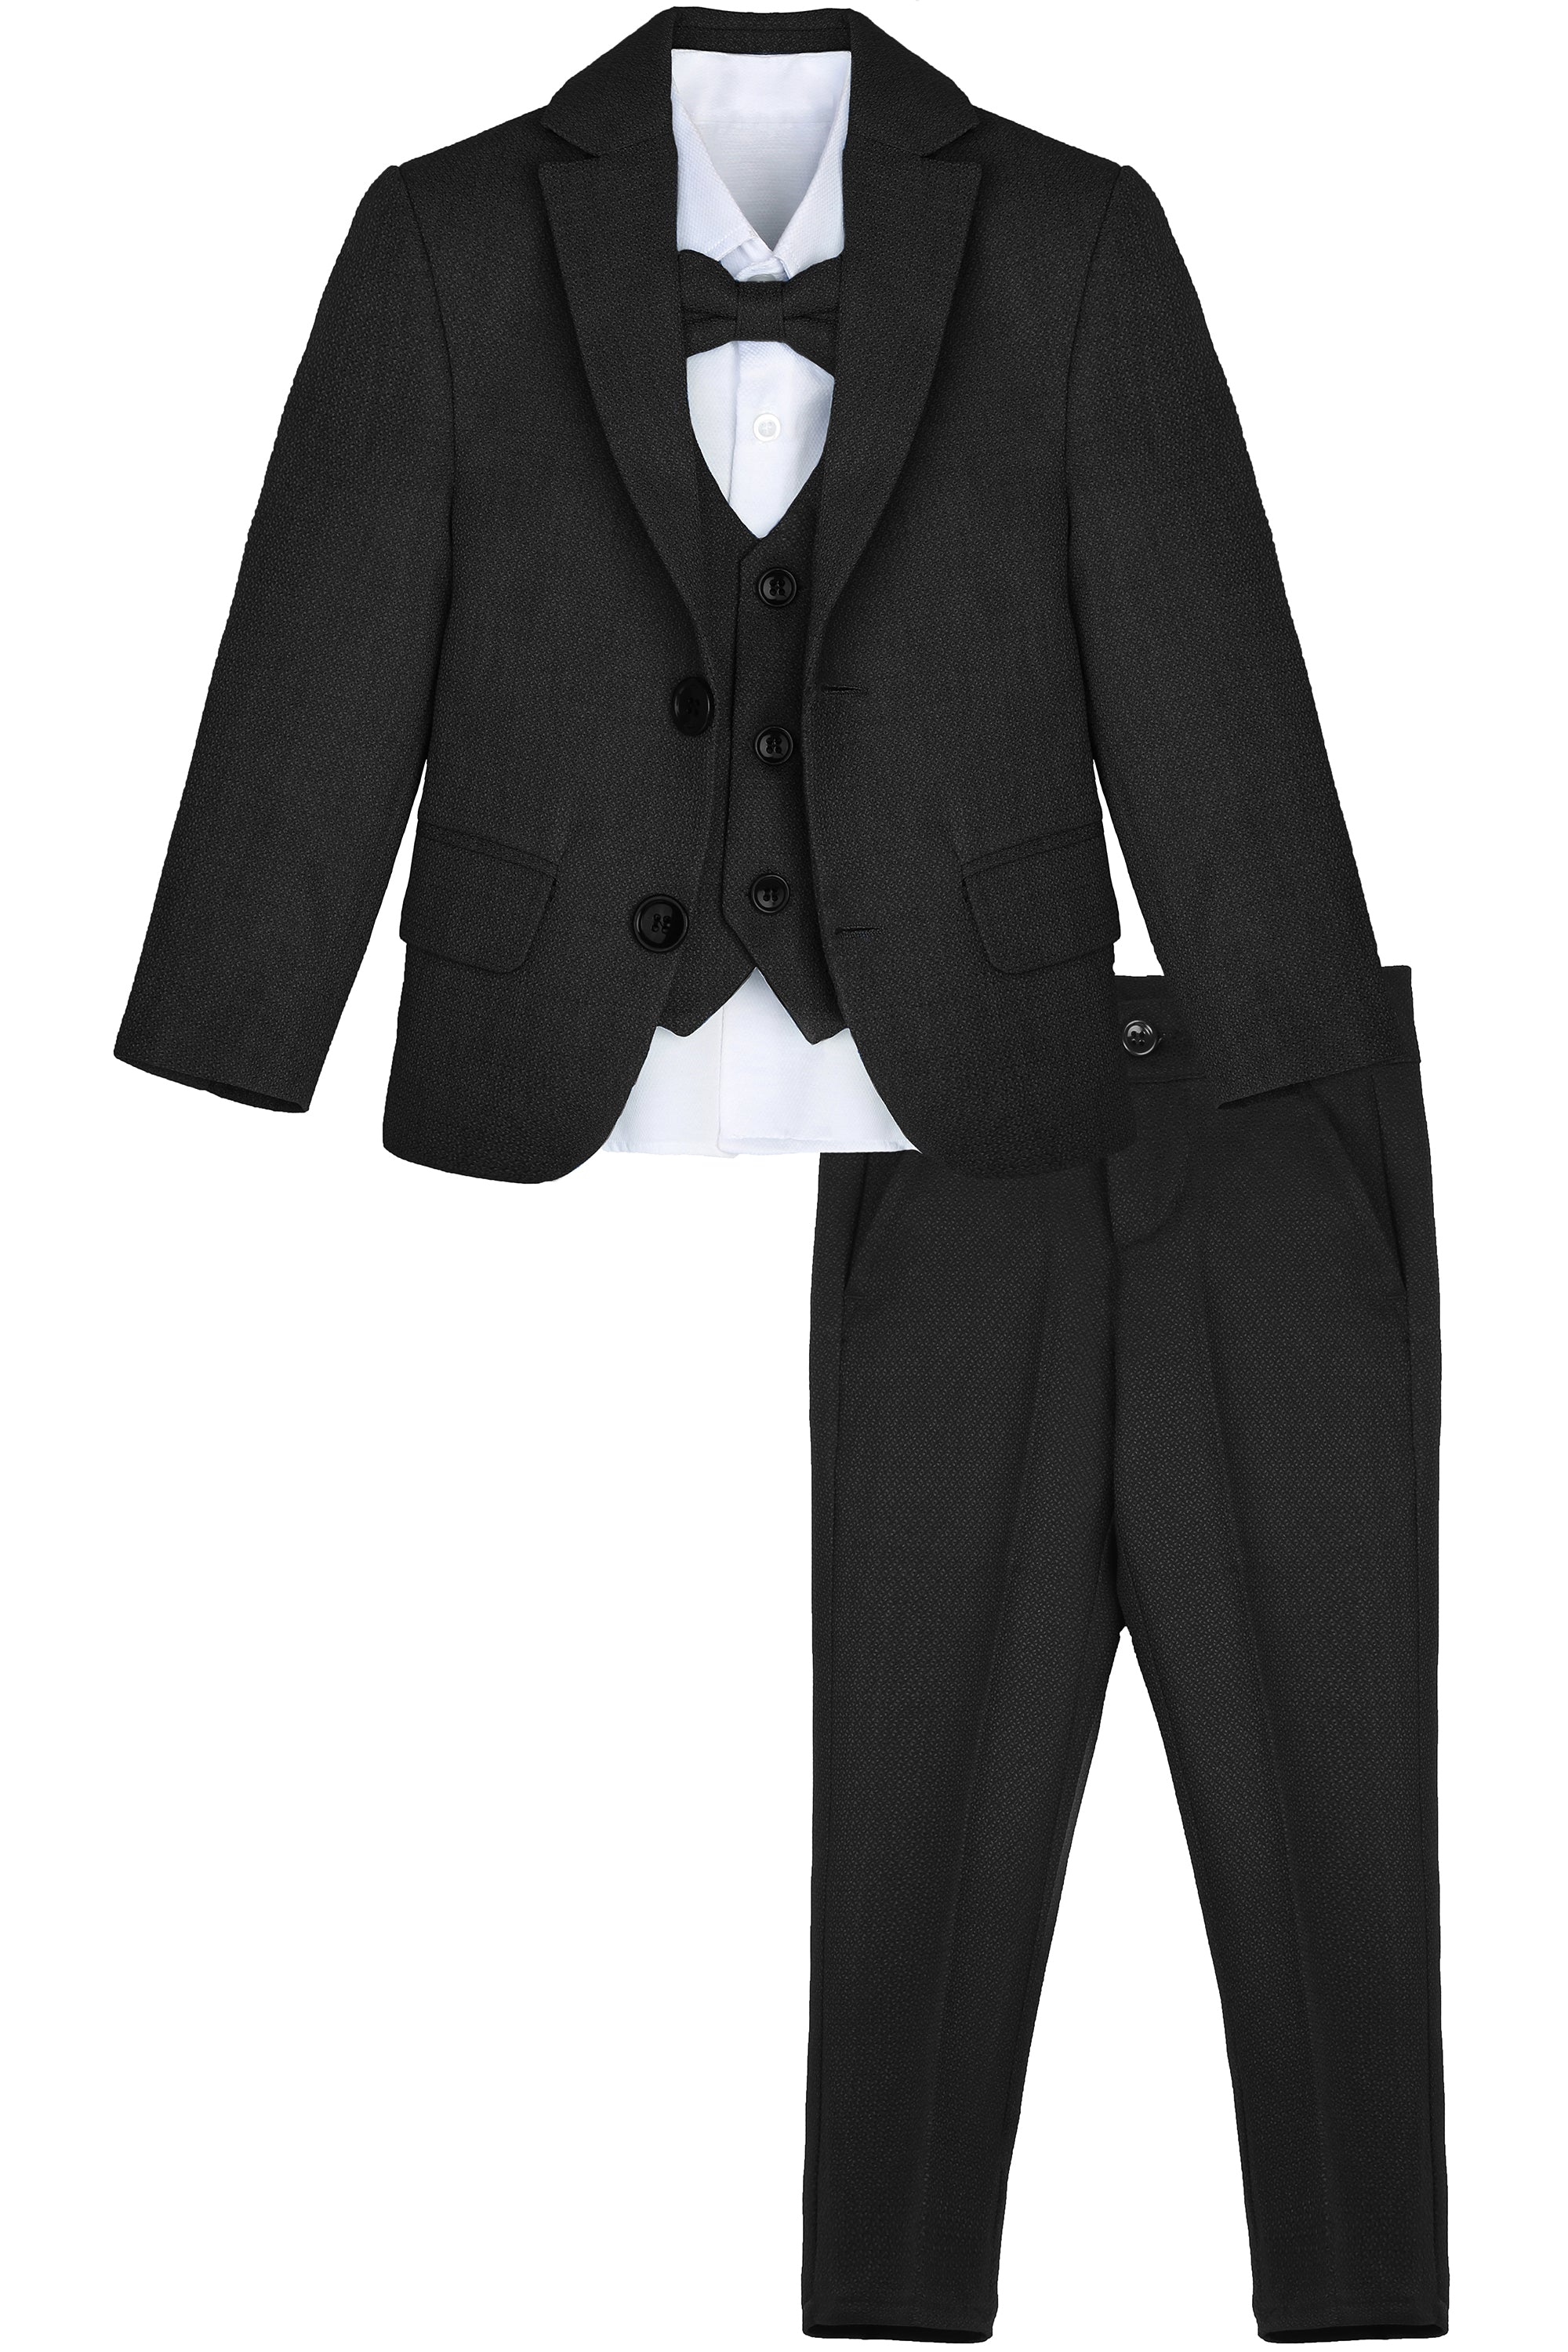 Boys Formal Suit 5 Piece Outfit Dresswear Suit Set – LILAX